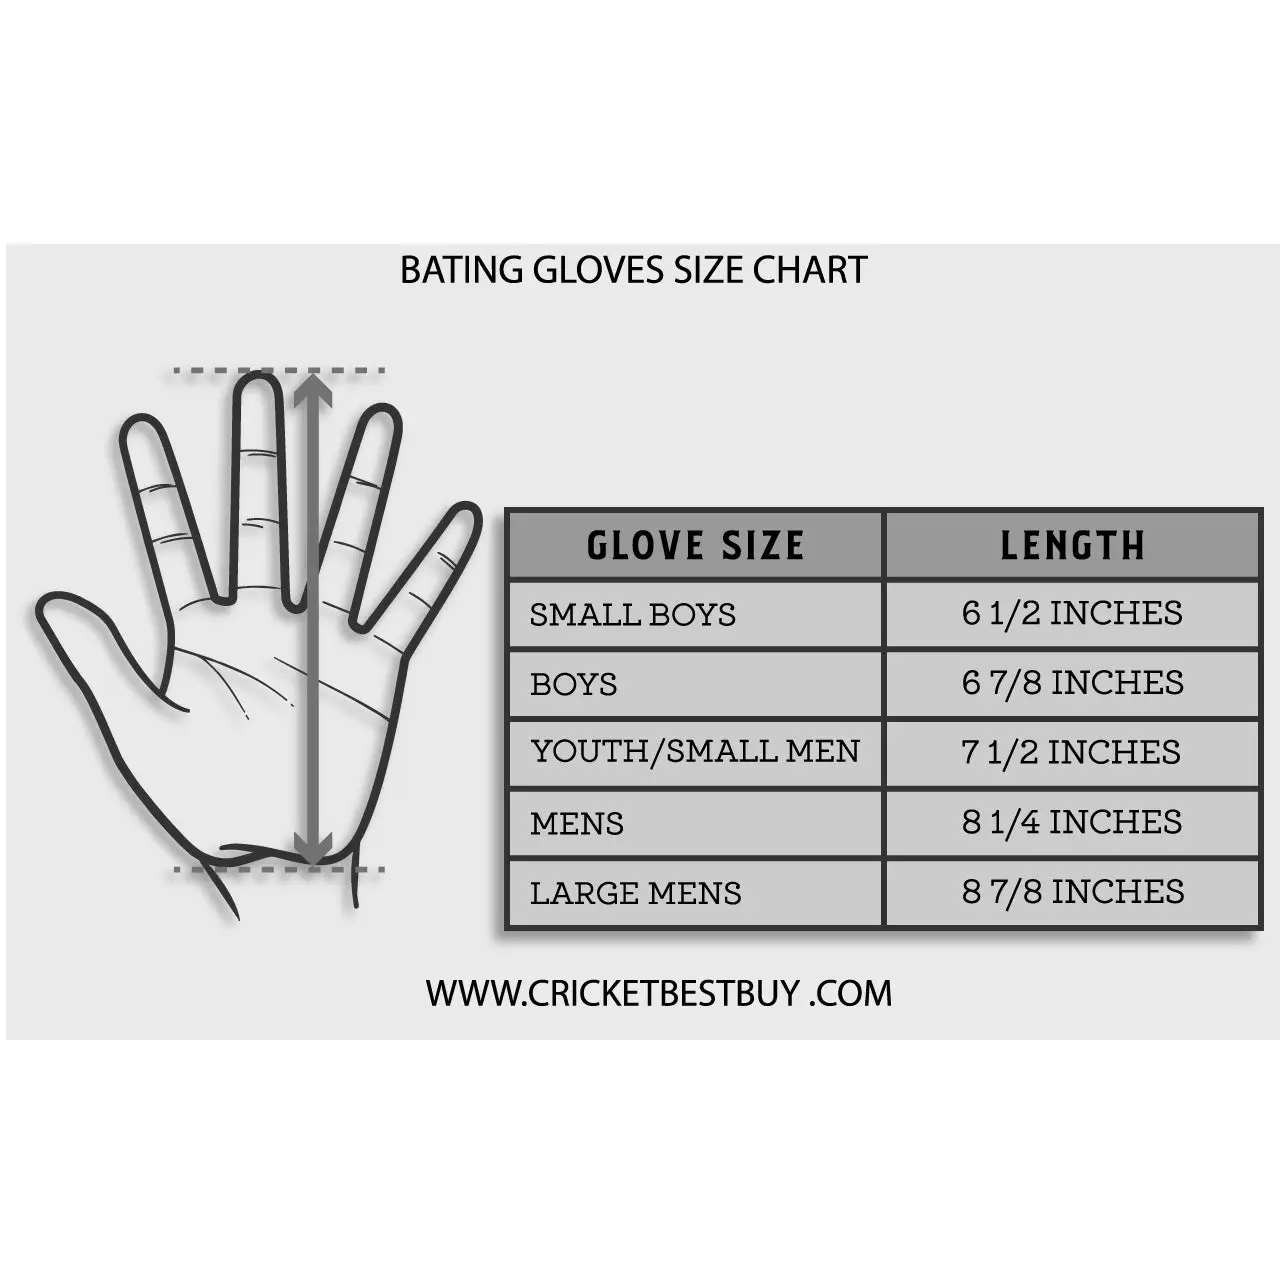 SG Rsd Prolite Batting Gloves - GLOVE - BATTING